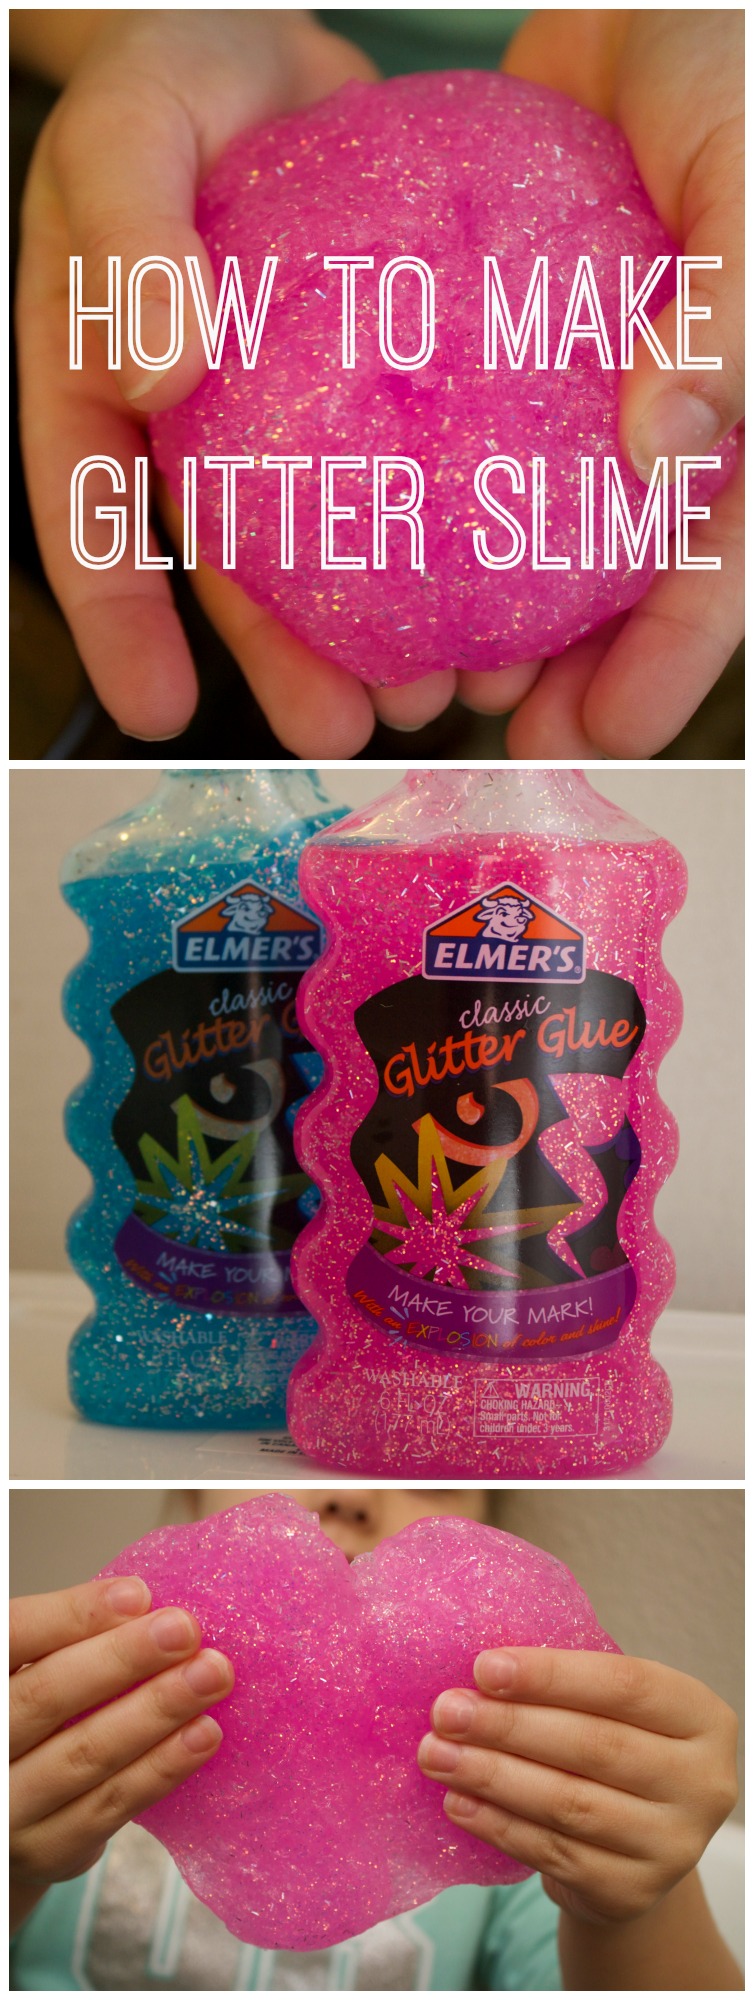 how to make slime-slime using glitter glue